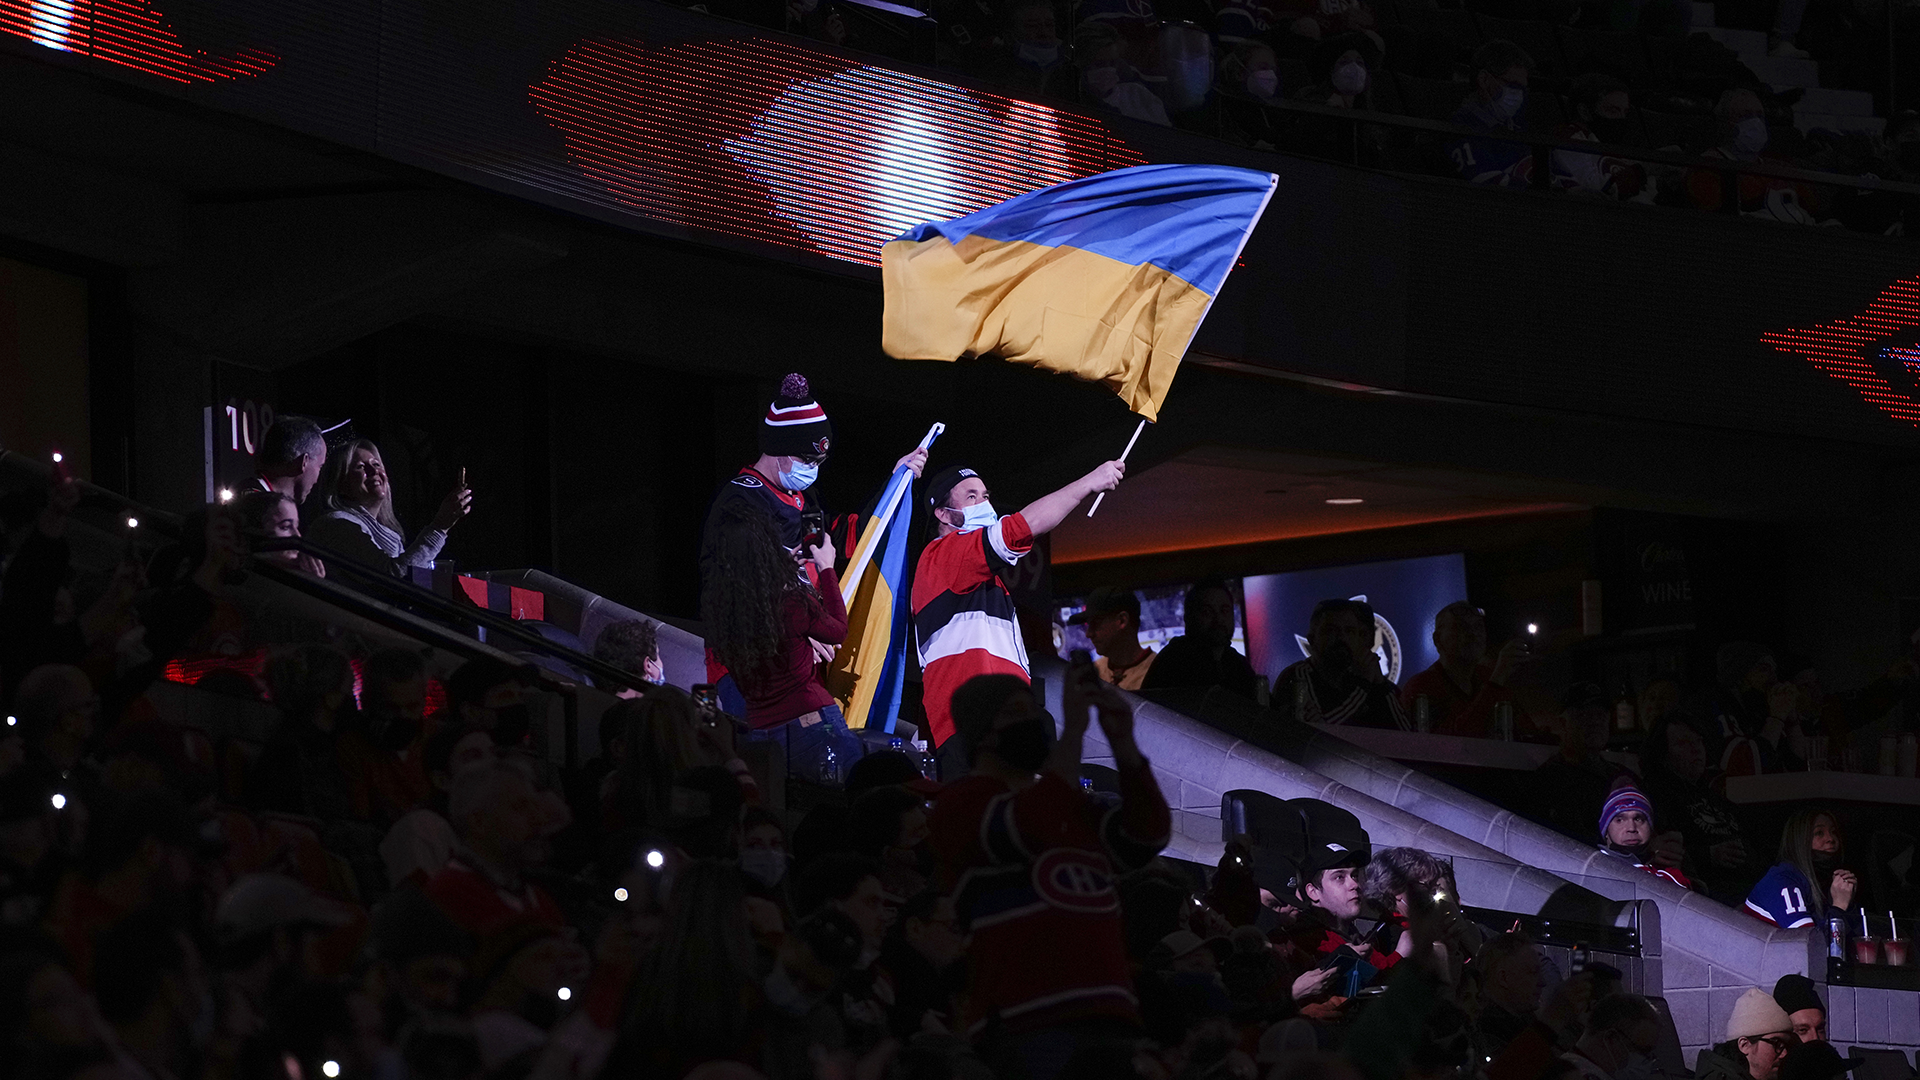 Le drapeau de l'Ukraine flottait samedi au match oppoisant les Sénateurs et le Canadien à Ottawa.